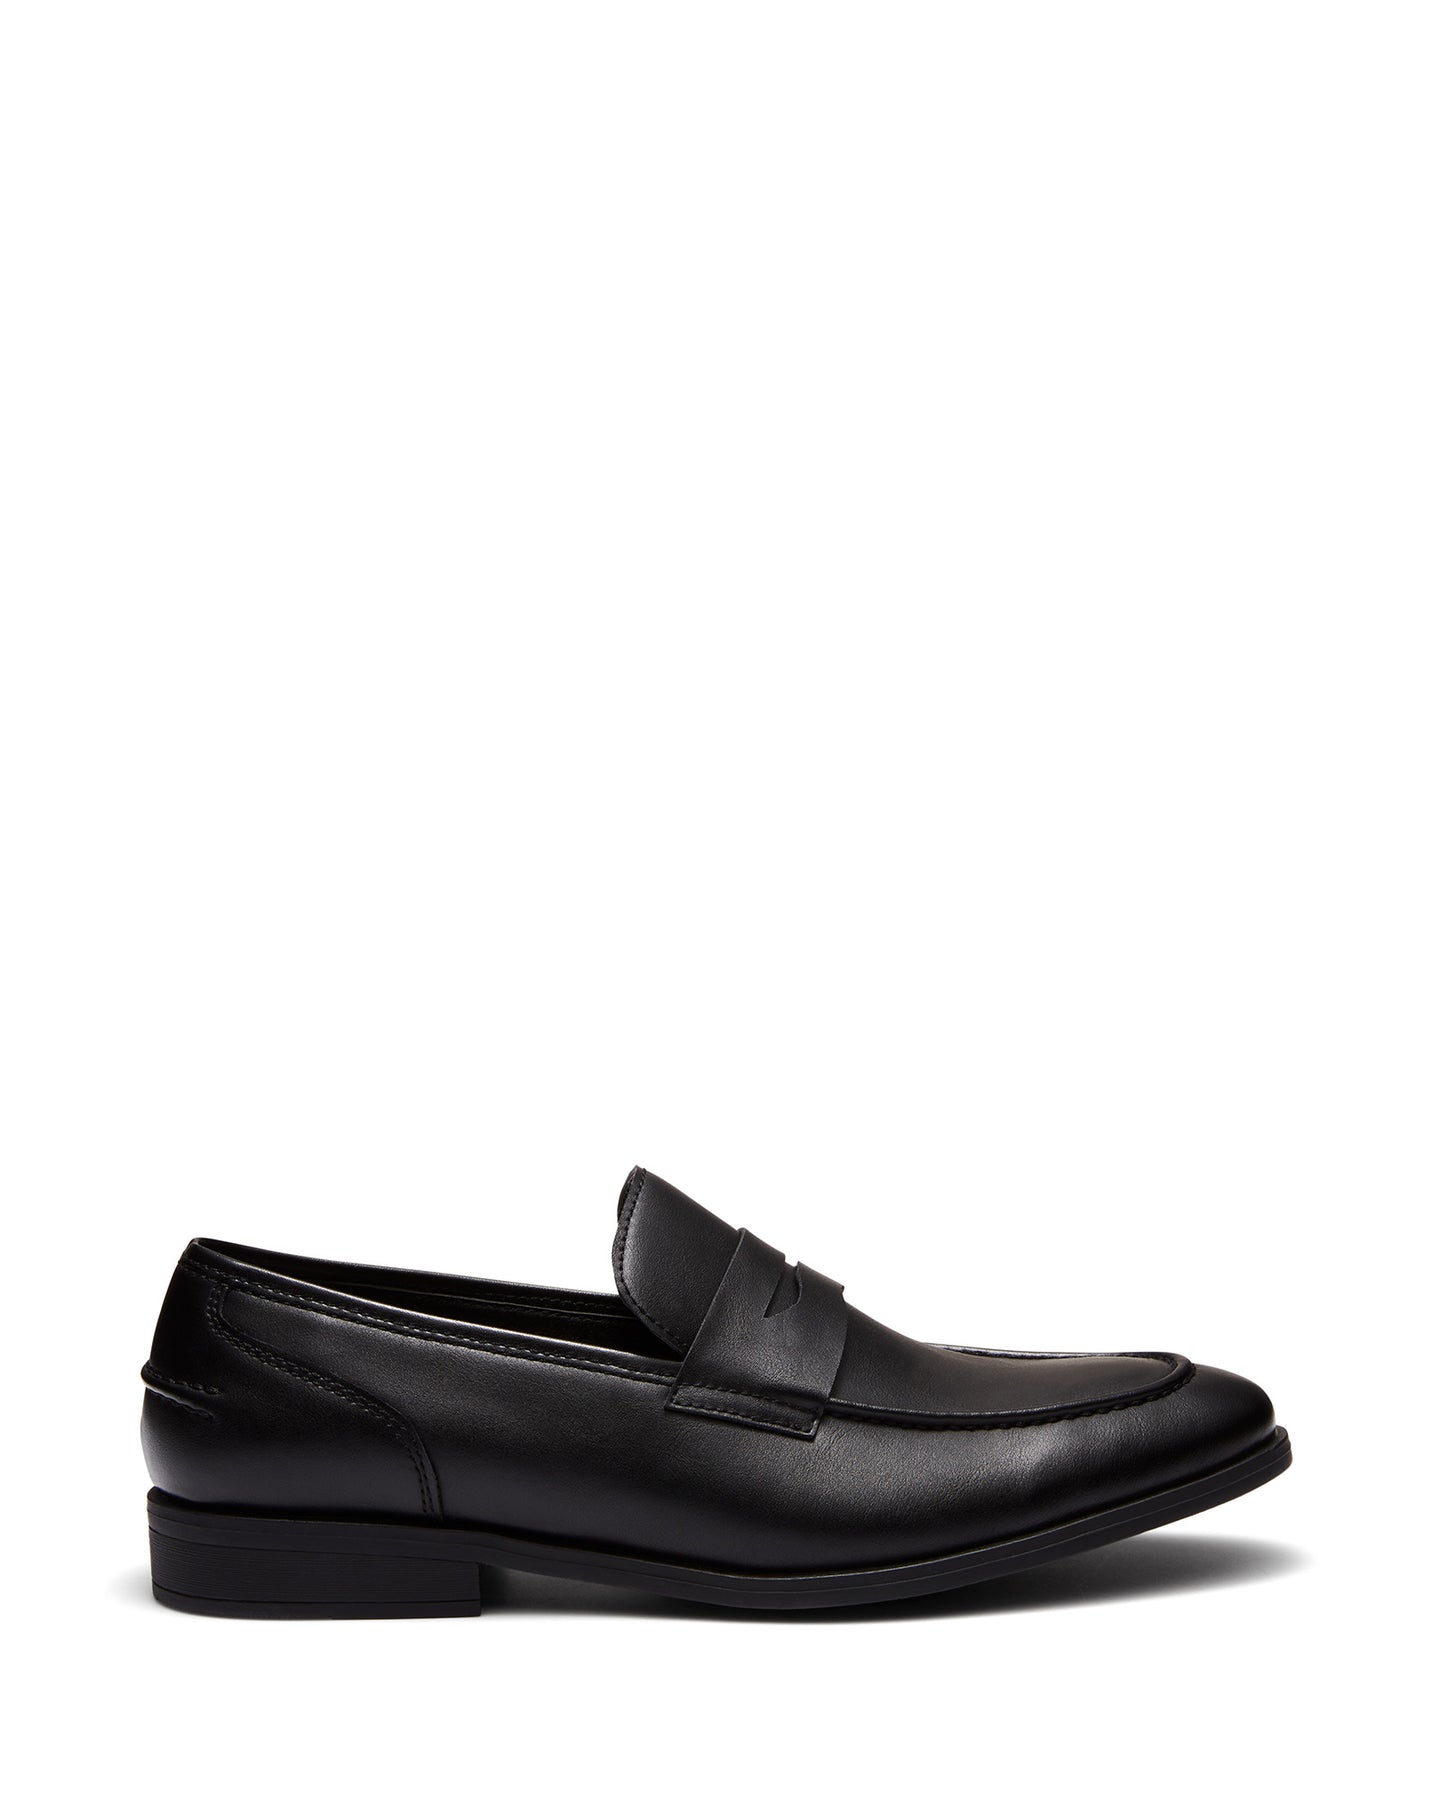 Uncut Shoes Spargo Black | Men's Loafer | Dress Shoe | Slip On | Penny ...